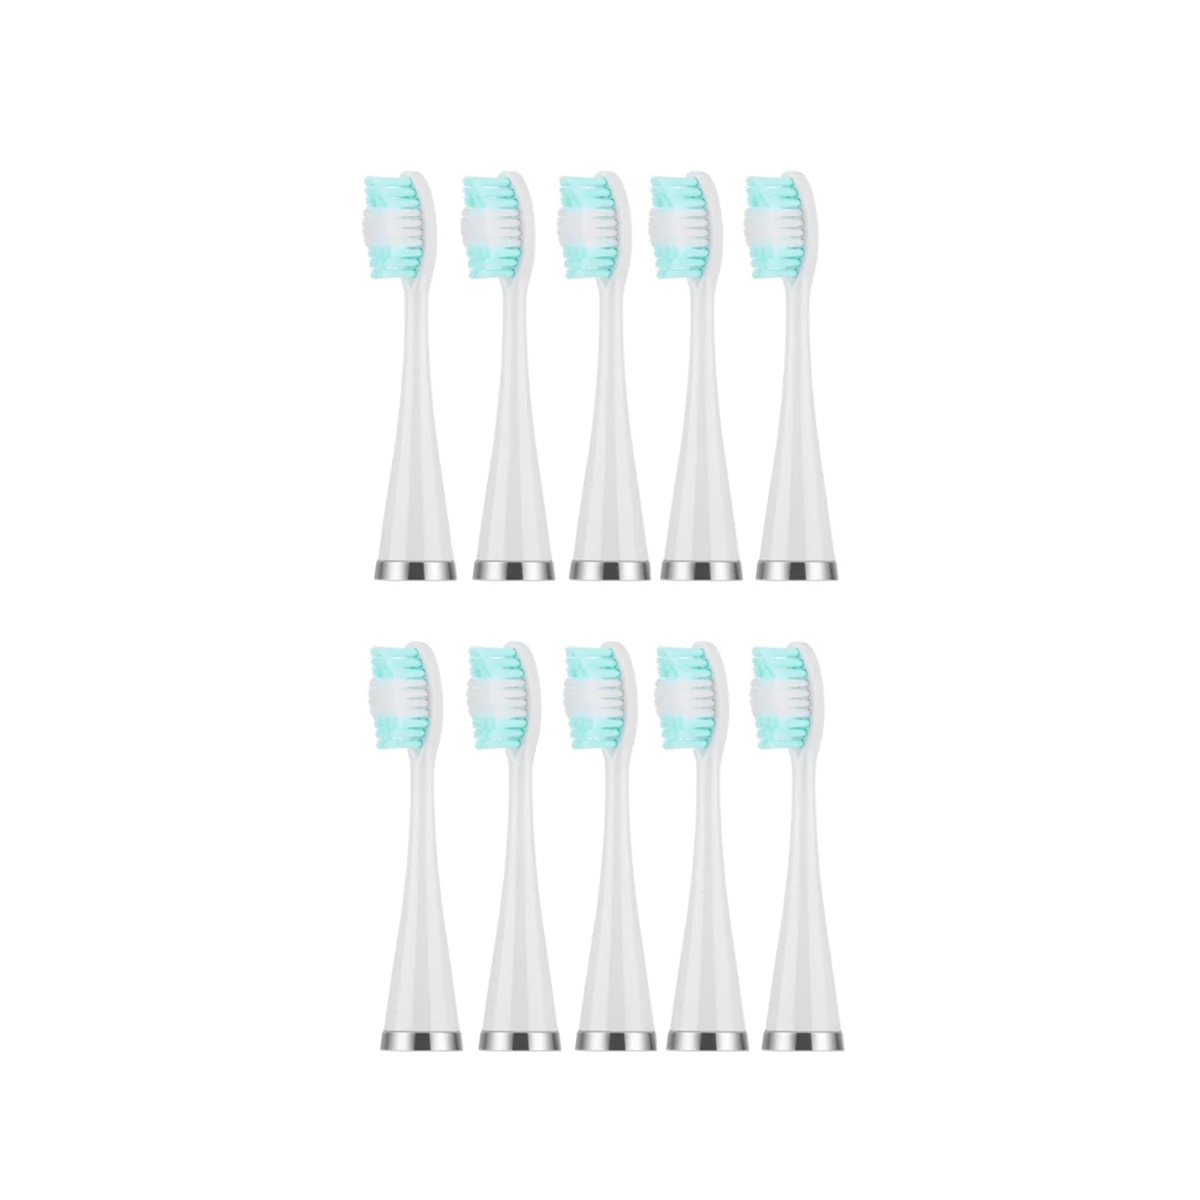 10PCS Електрически глави за четка за зъби Резервни глави за четка за електрически четки за зъби Четка за избелване на зъби, бяла